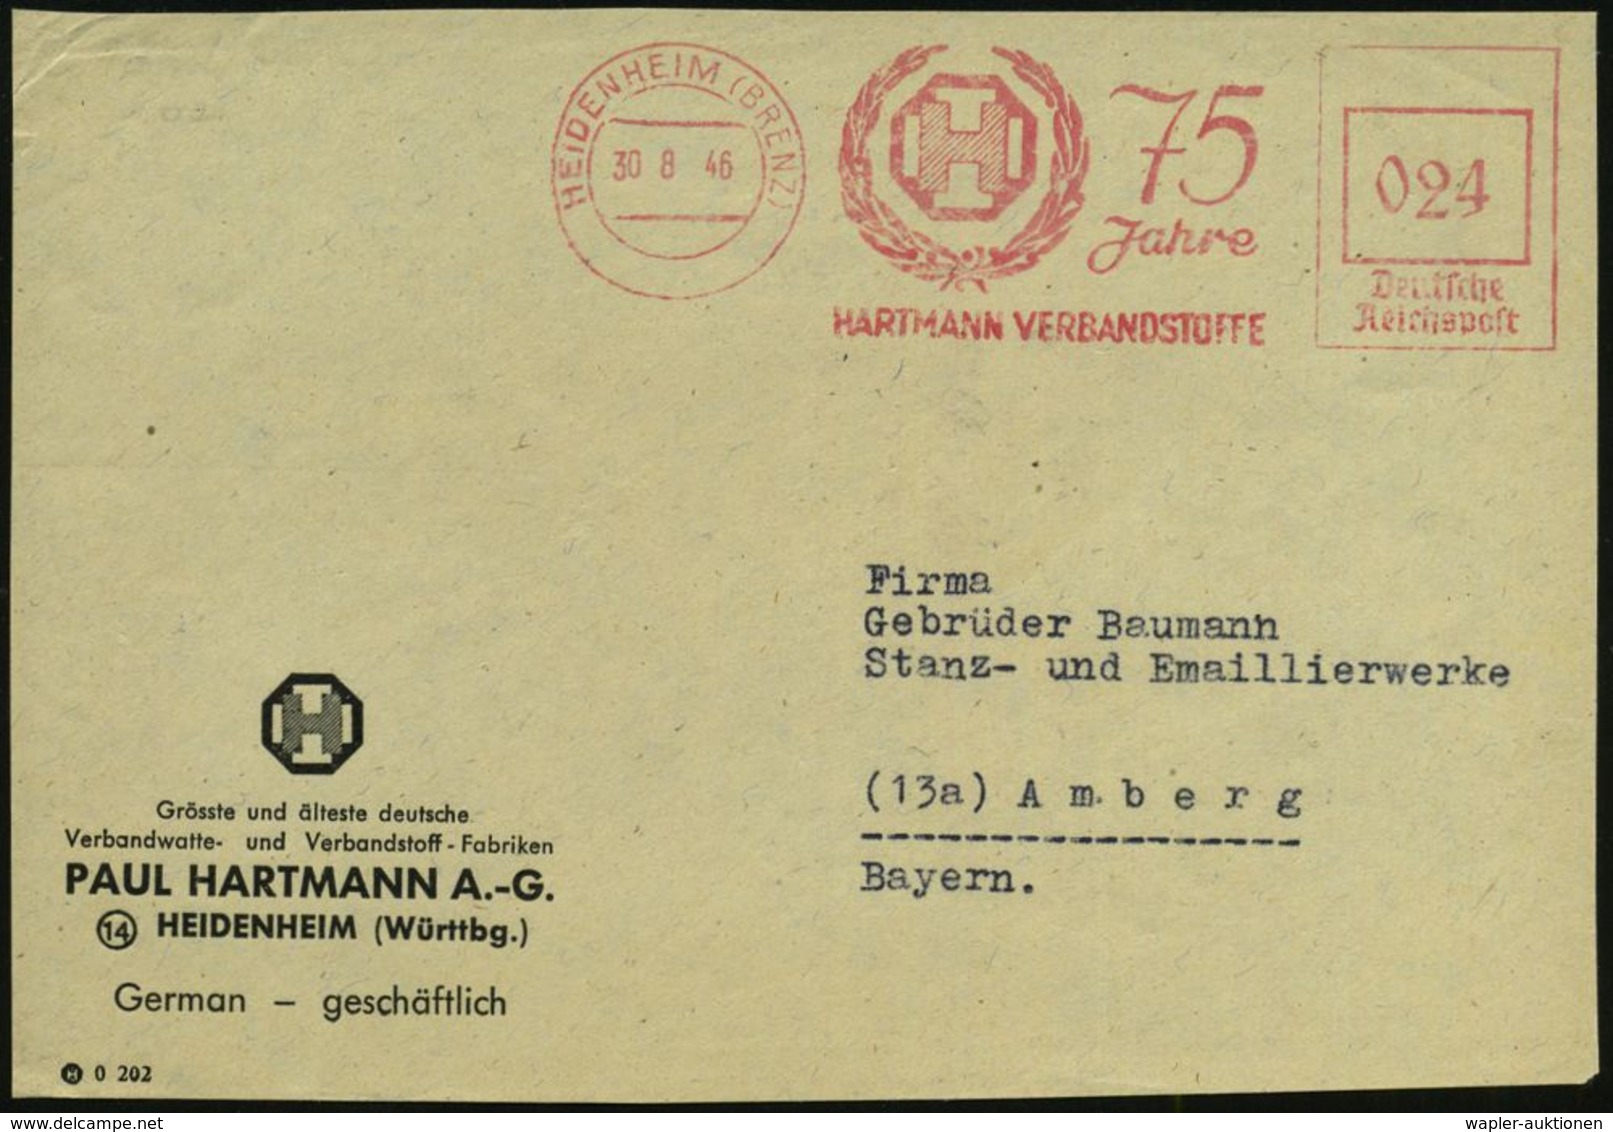 MEDIZINISCHE AUSRÜSTUNG & INSTRUMENTE : HEIDENHEIM (BRENZ)/ 75 Jahre/ HARTMANN VERBANDSSTOFFE 1946 (30.8.) Seltener, Apt - Medizin